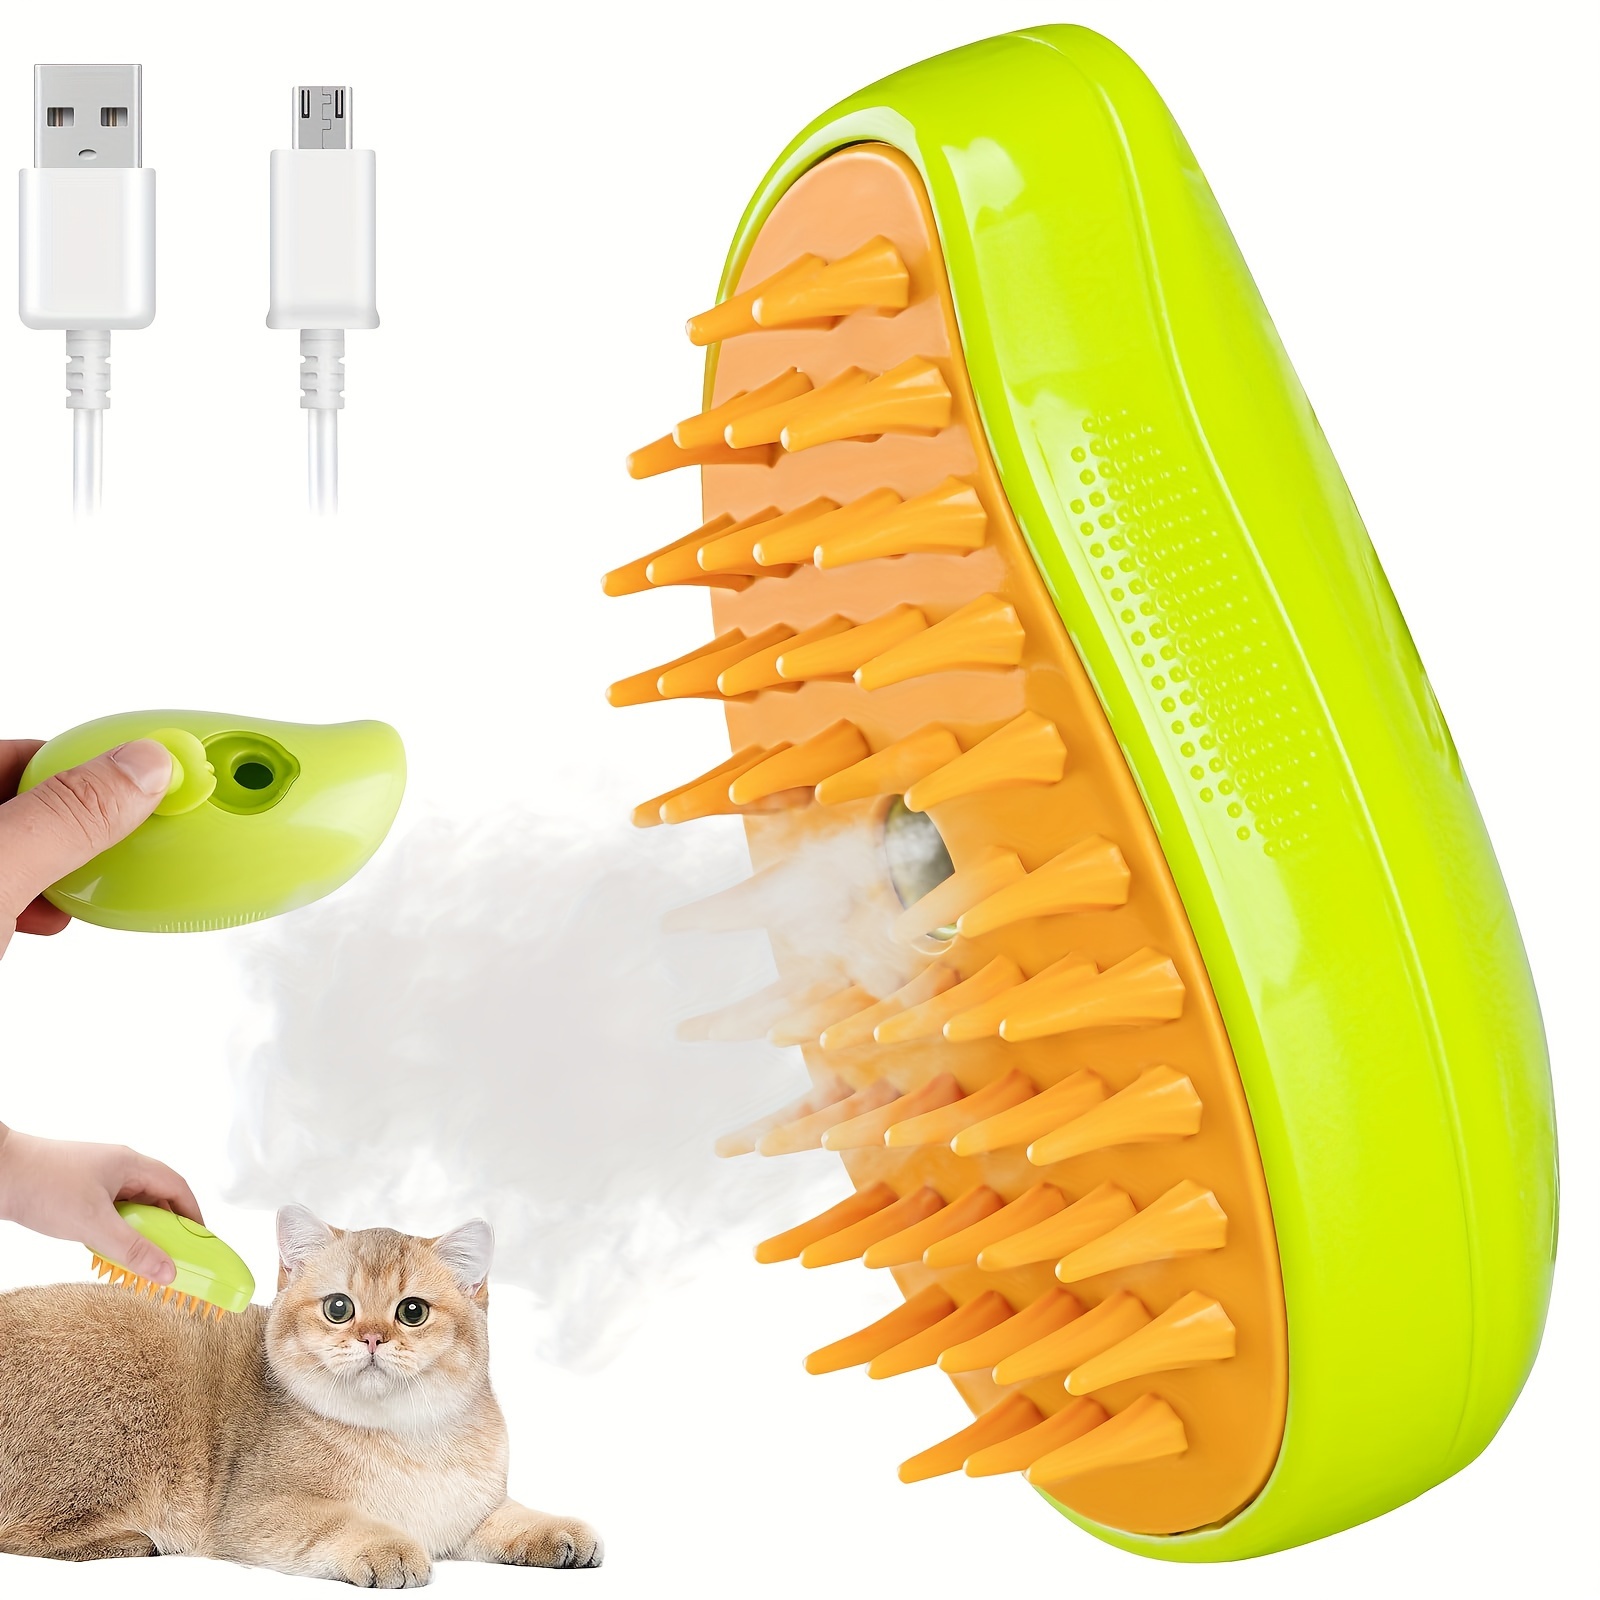 Cepillo de vapor para gatos, cepillo de vapor para gatos 3 en 1, el mejor cepillo  de vapor para gatos autolimpiante para masajes, cepillo de vapor para gatos  multifuncional, para eliminar enredados